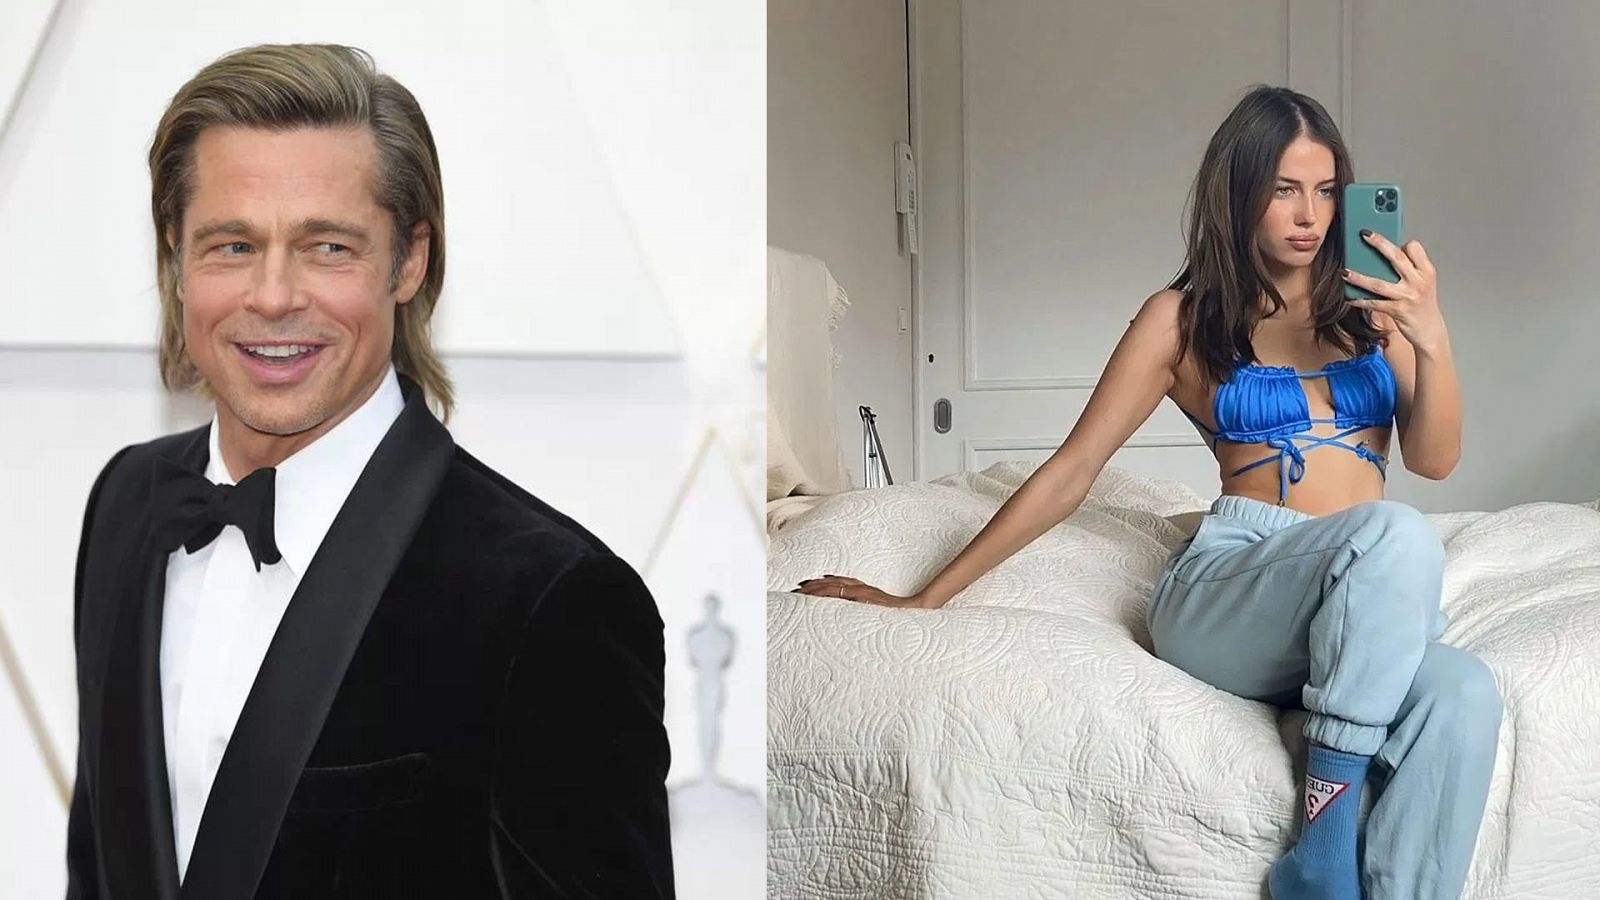  La modelo Nicole Poturalski, de 27 años, nueva novia de Brad Pitt